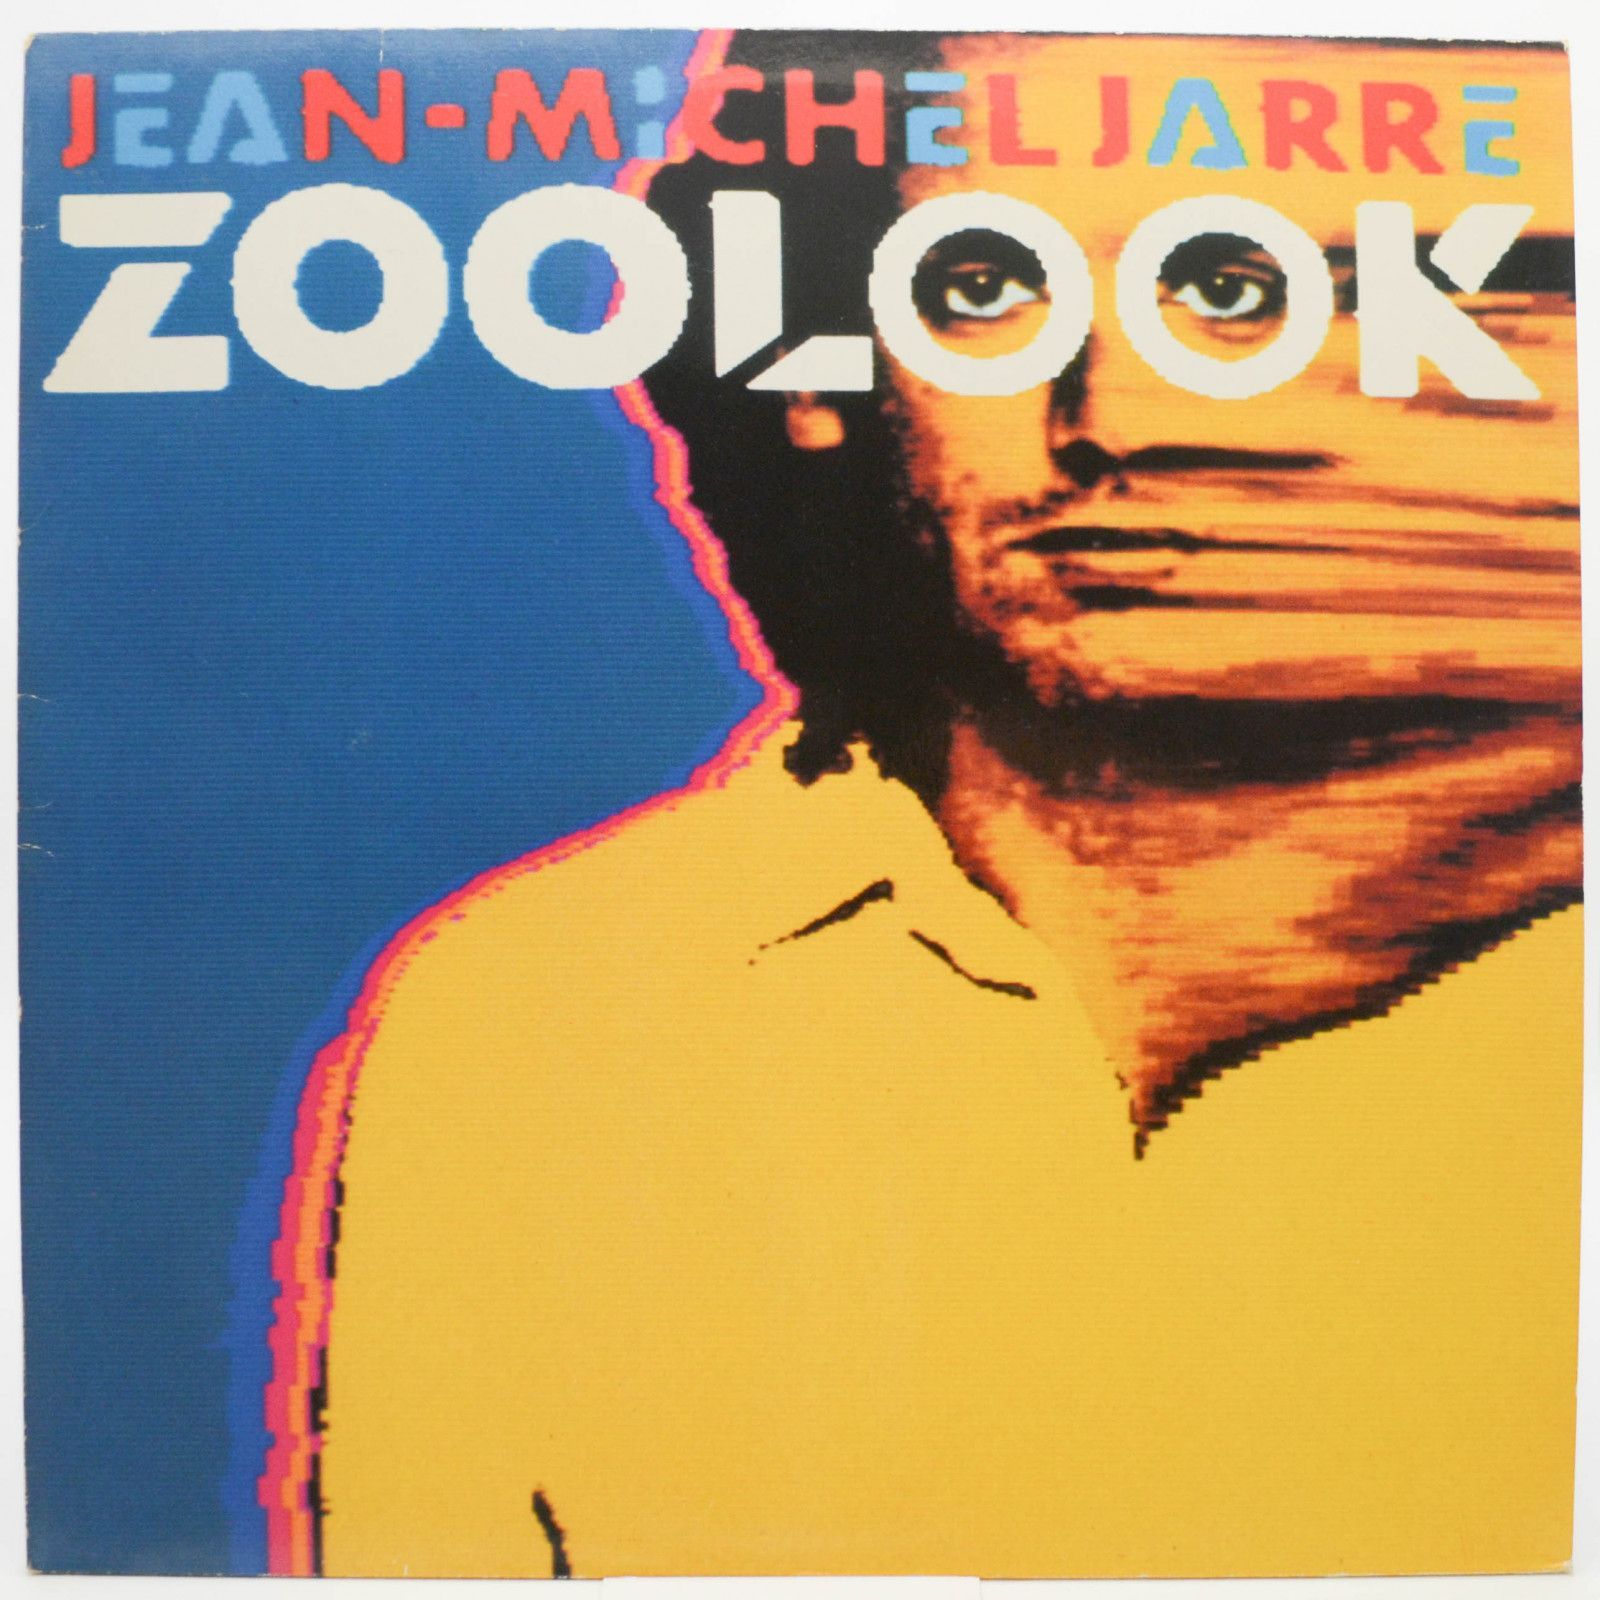 Jean-Michel Jarre — Zoolook, 1985